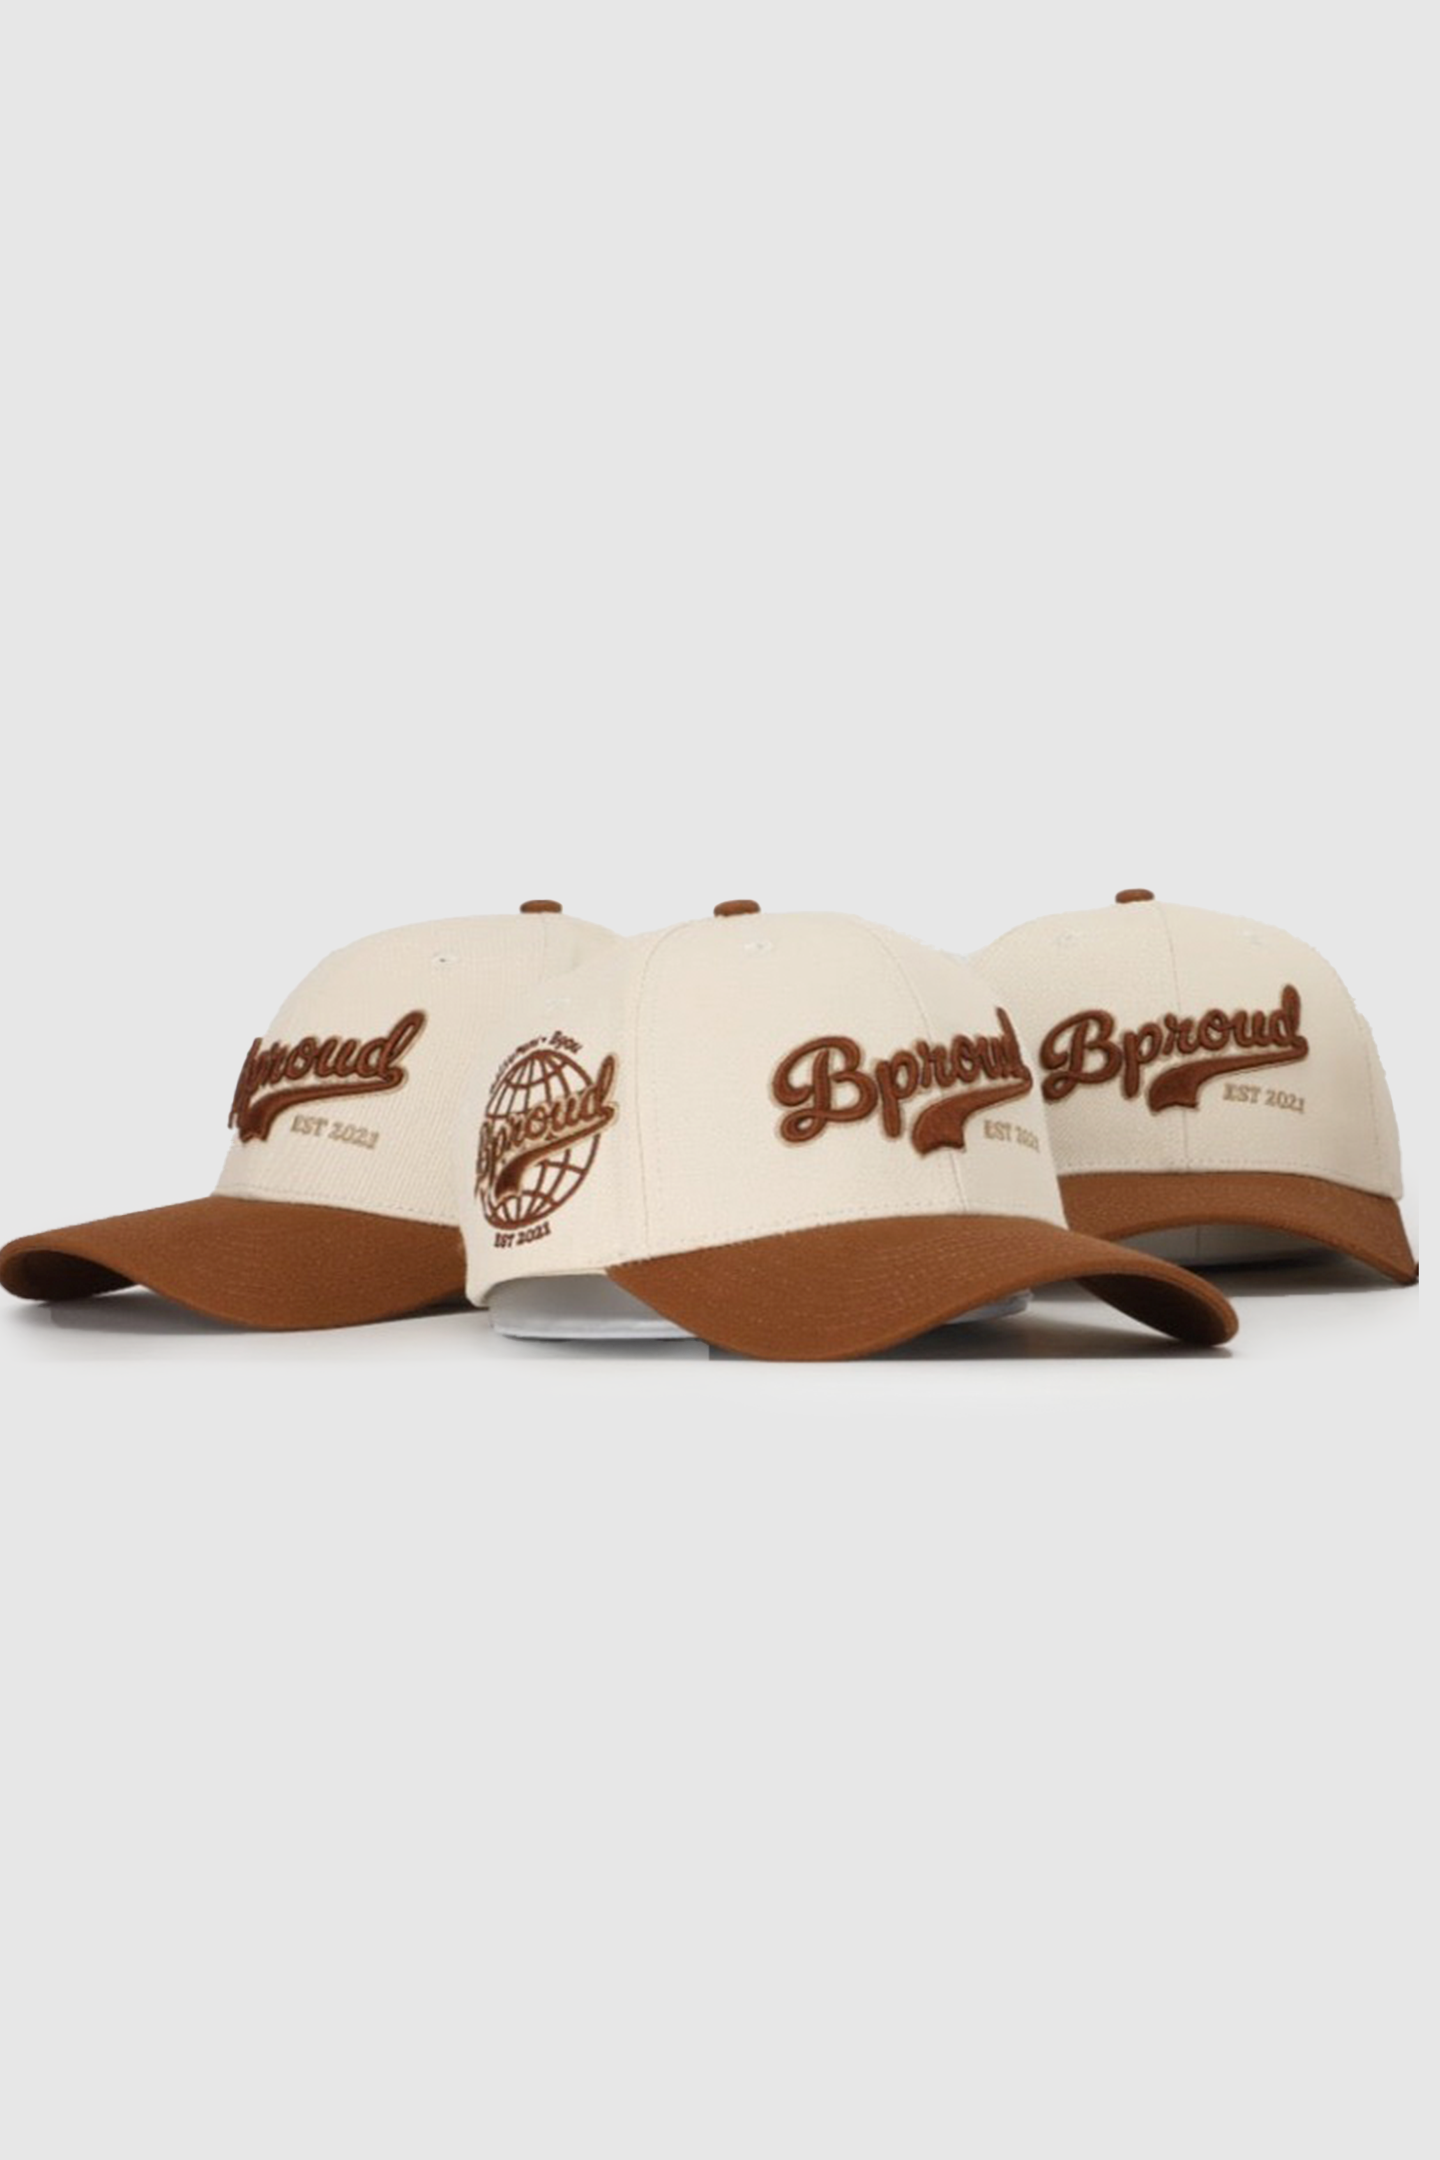 Bproud "Brown" Baseball Cap